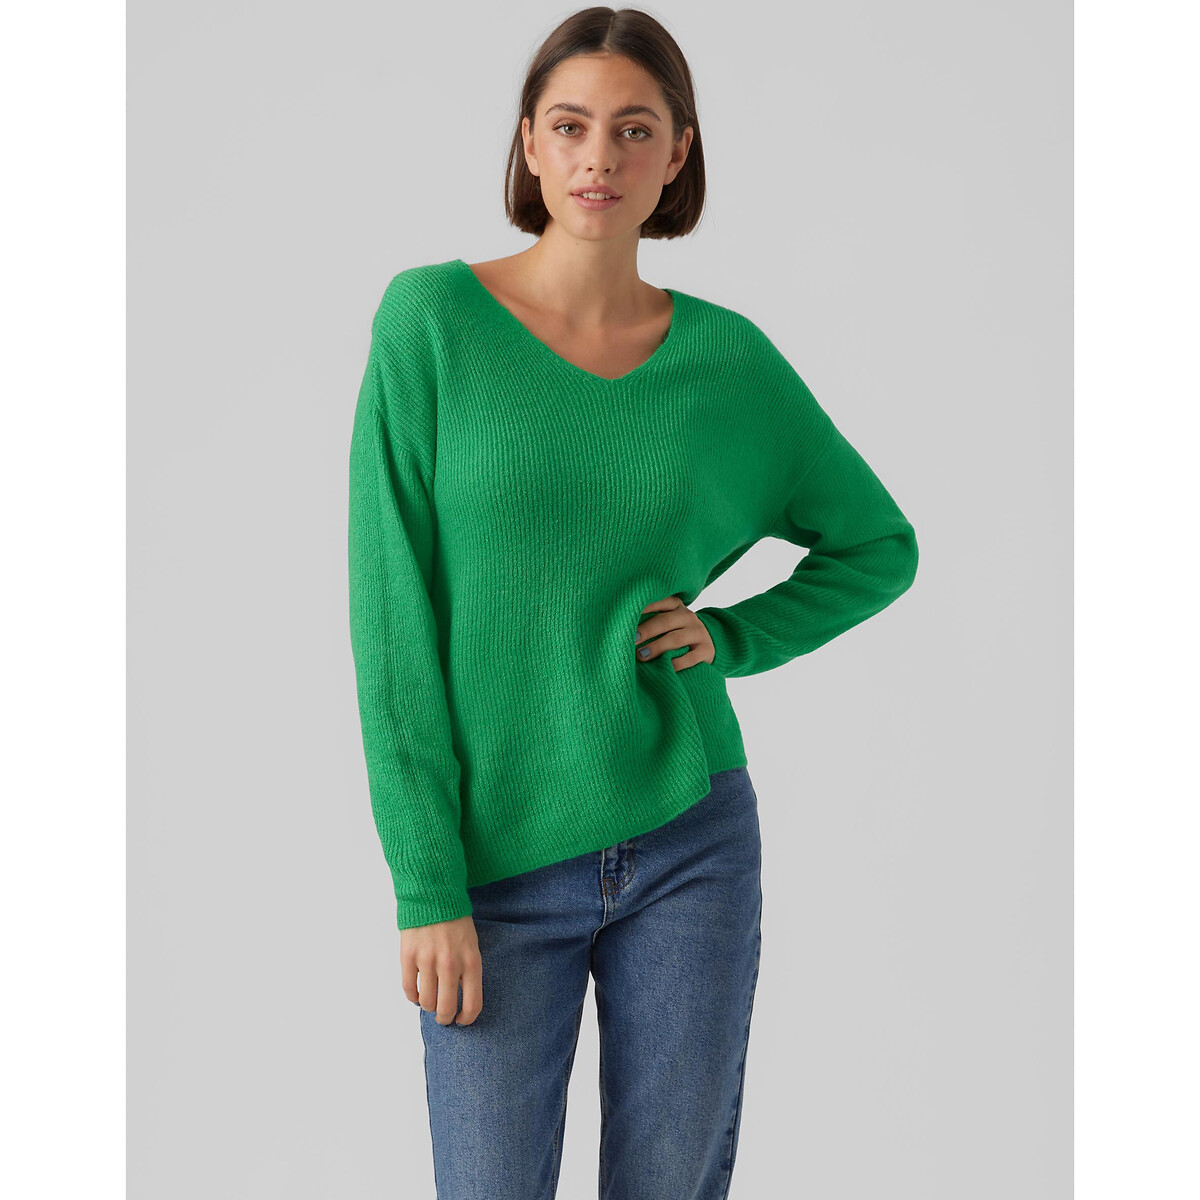 Пуловер Из пышного трикотажа V-образный вырез L зеленый LaRedoute, размер L - фото 2